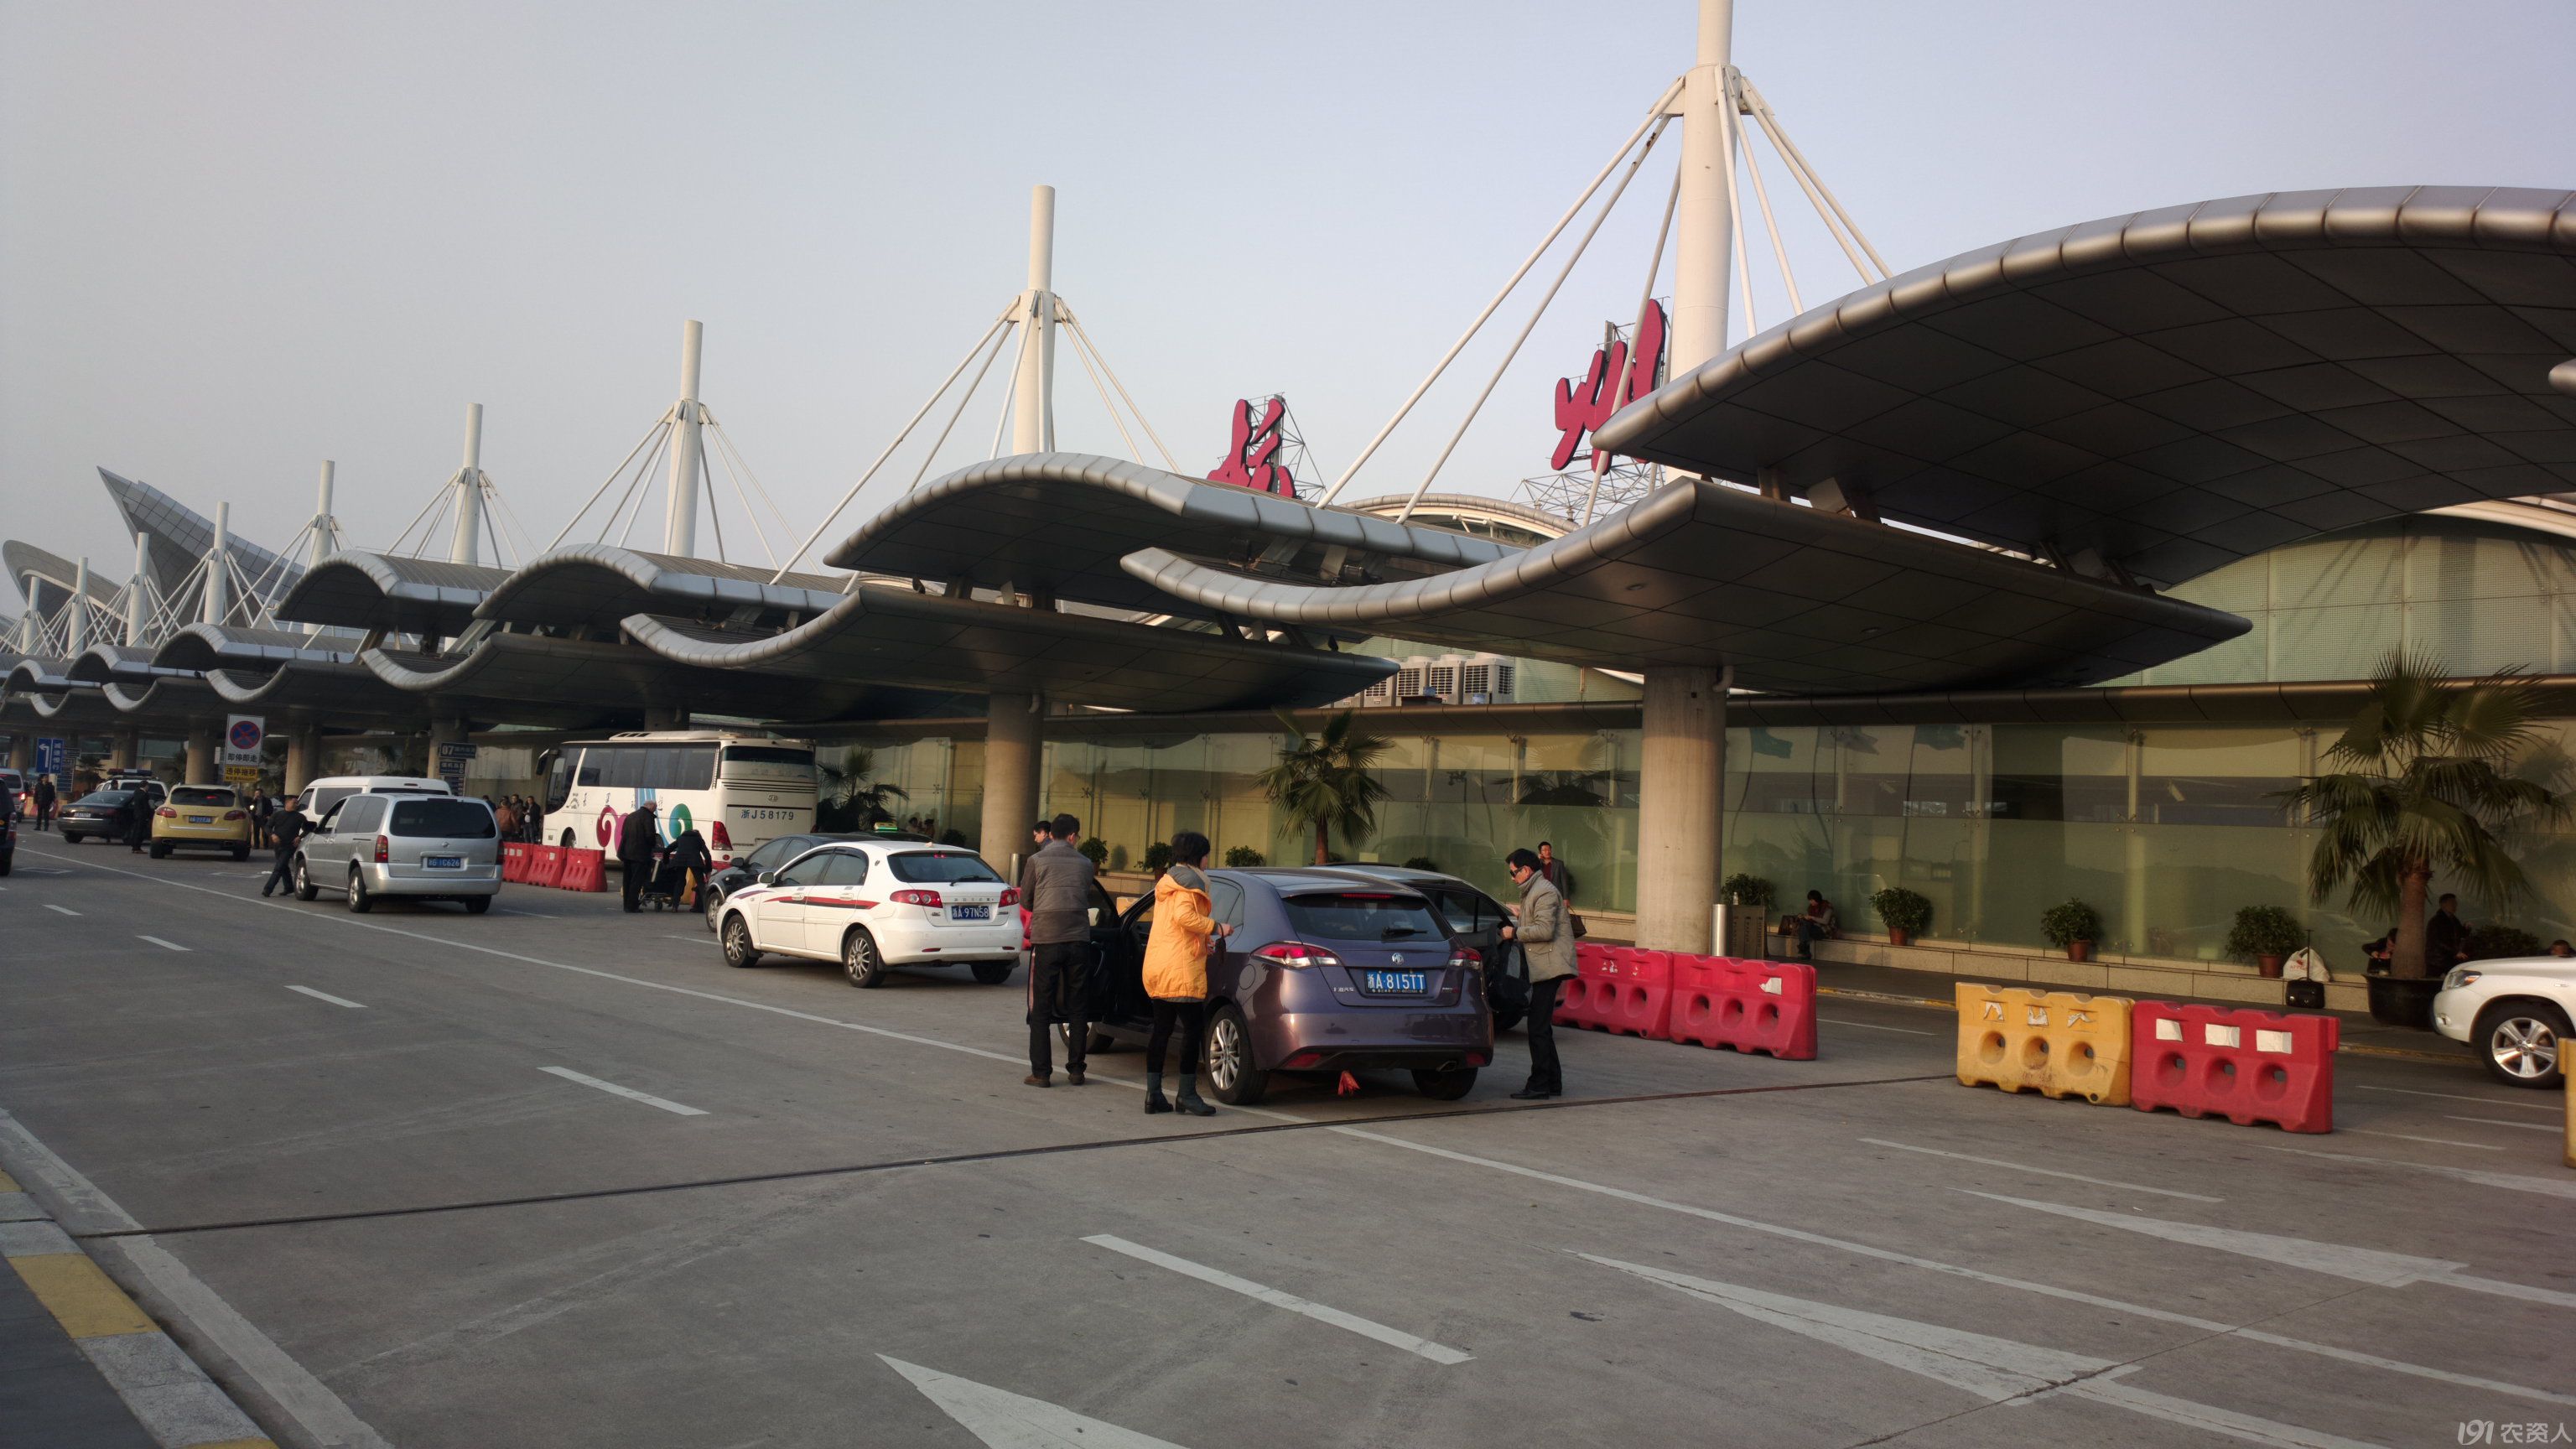 杭州机场照片 真实图片